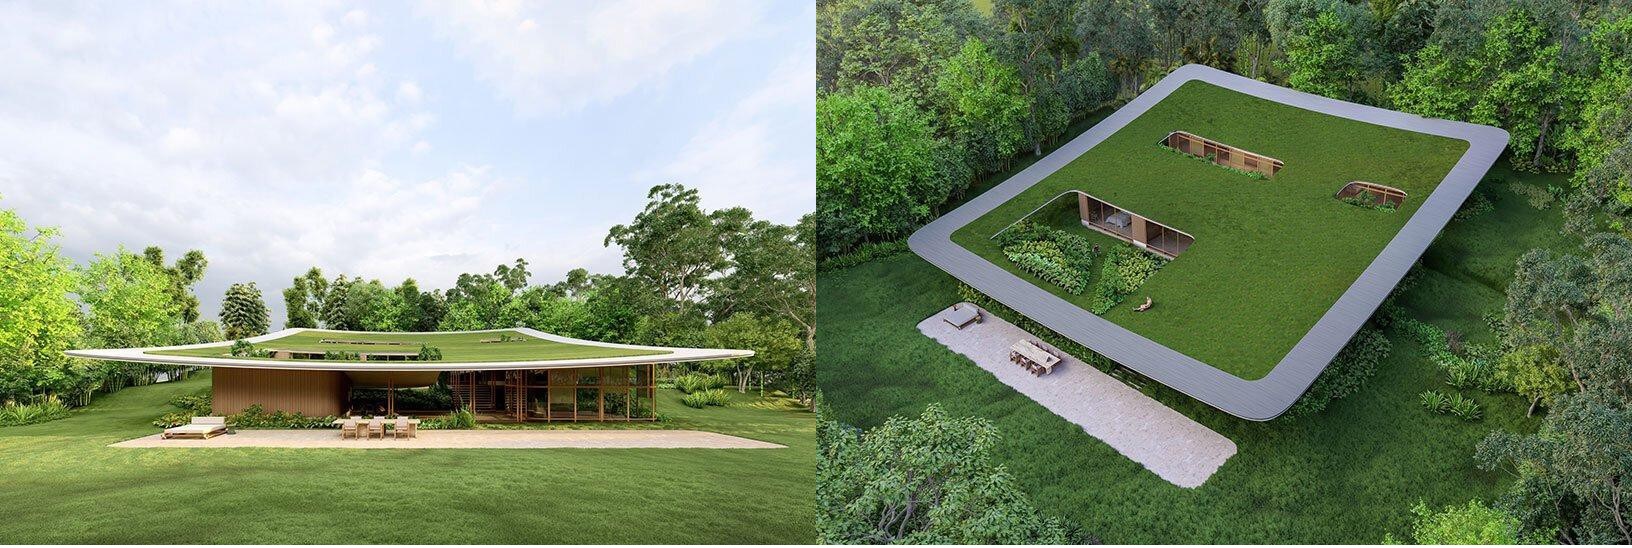 Thảm cỏ làm mái một thiết kế độc đáo ở Brazil